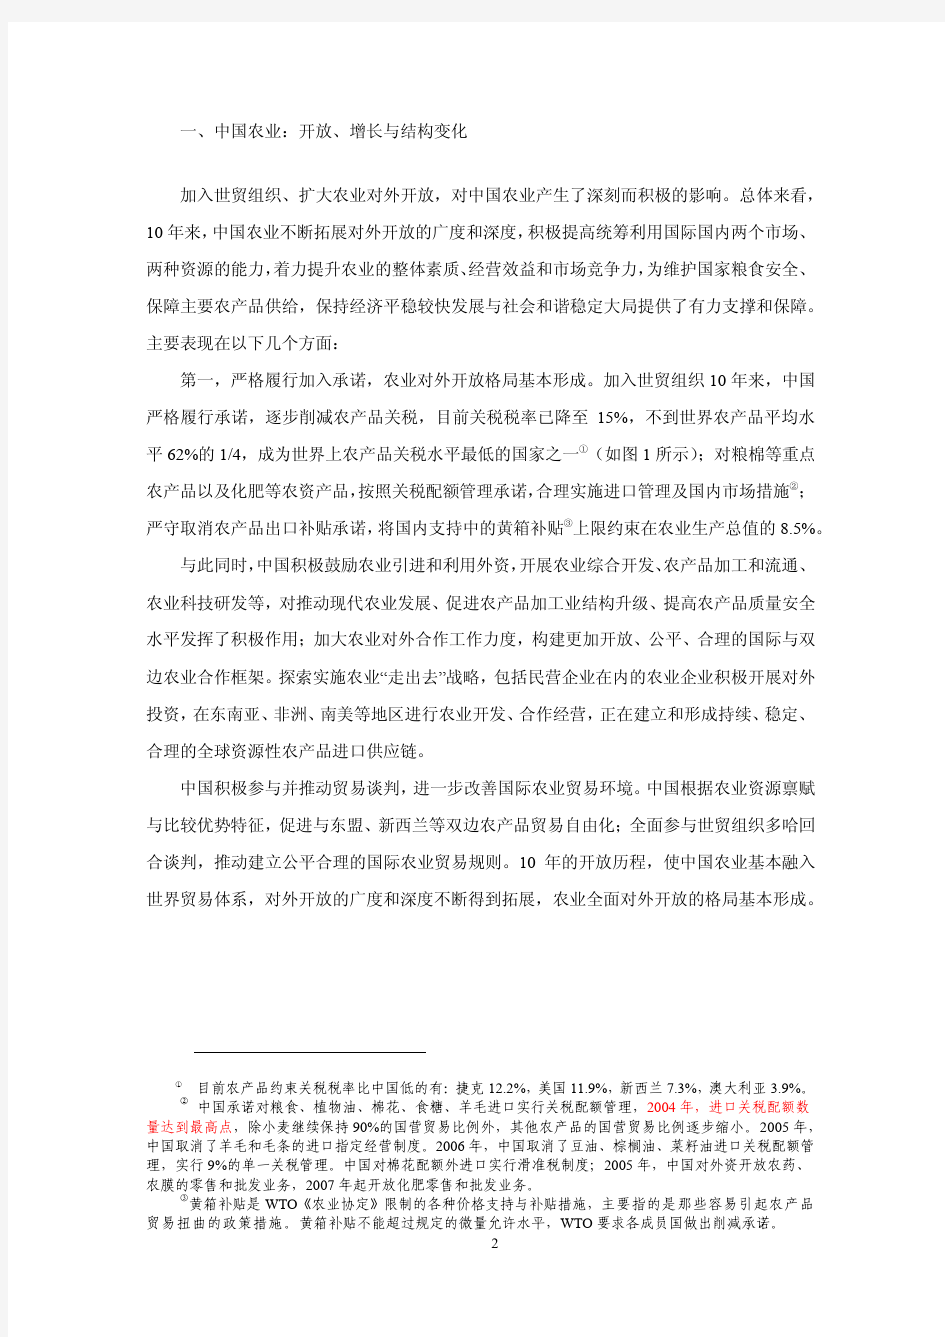 中国农业对外开放(发表于《中国农村经济》2012年第3期)